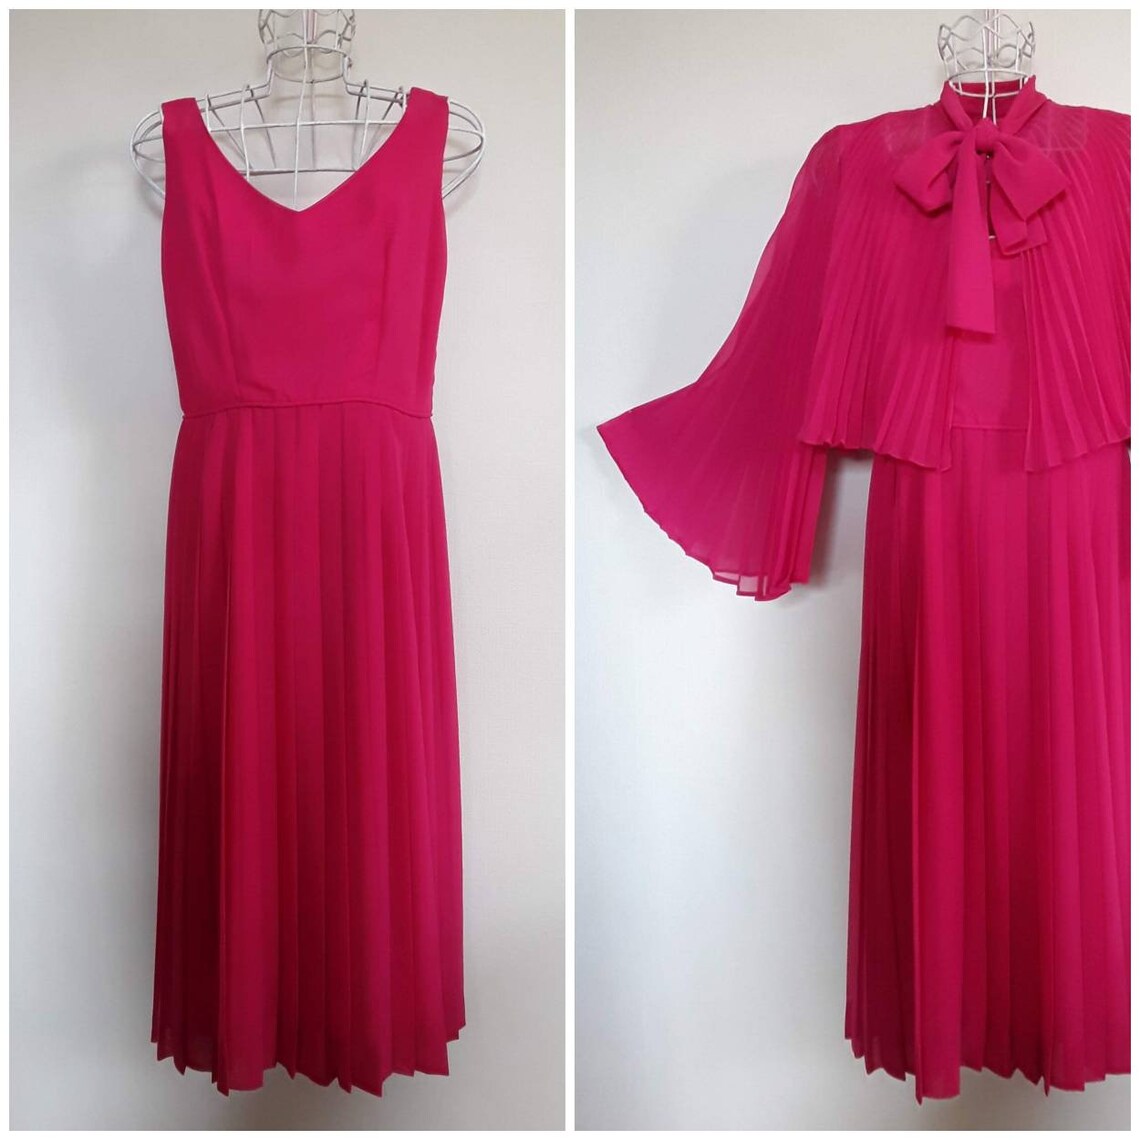 VINTAGE DRESS & JACKET cerise pink sleeveless dress with | Etsy